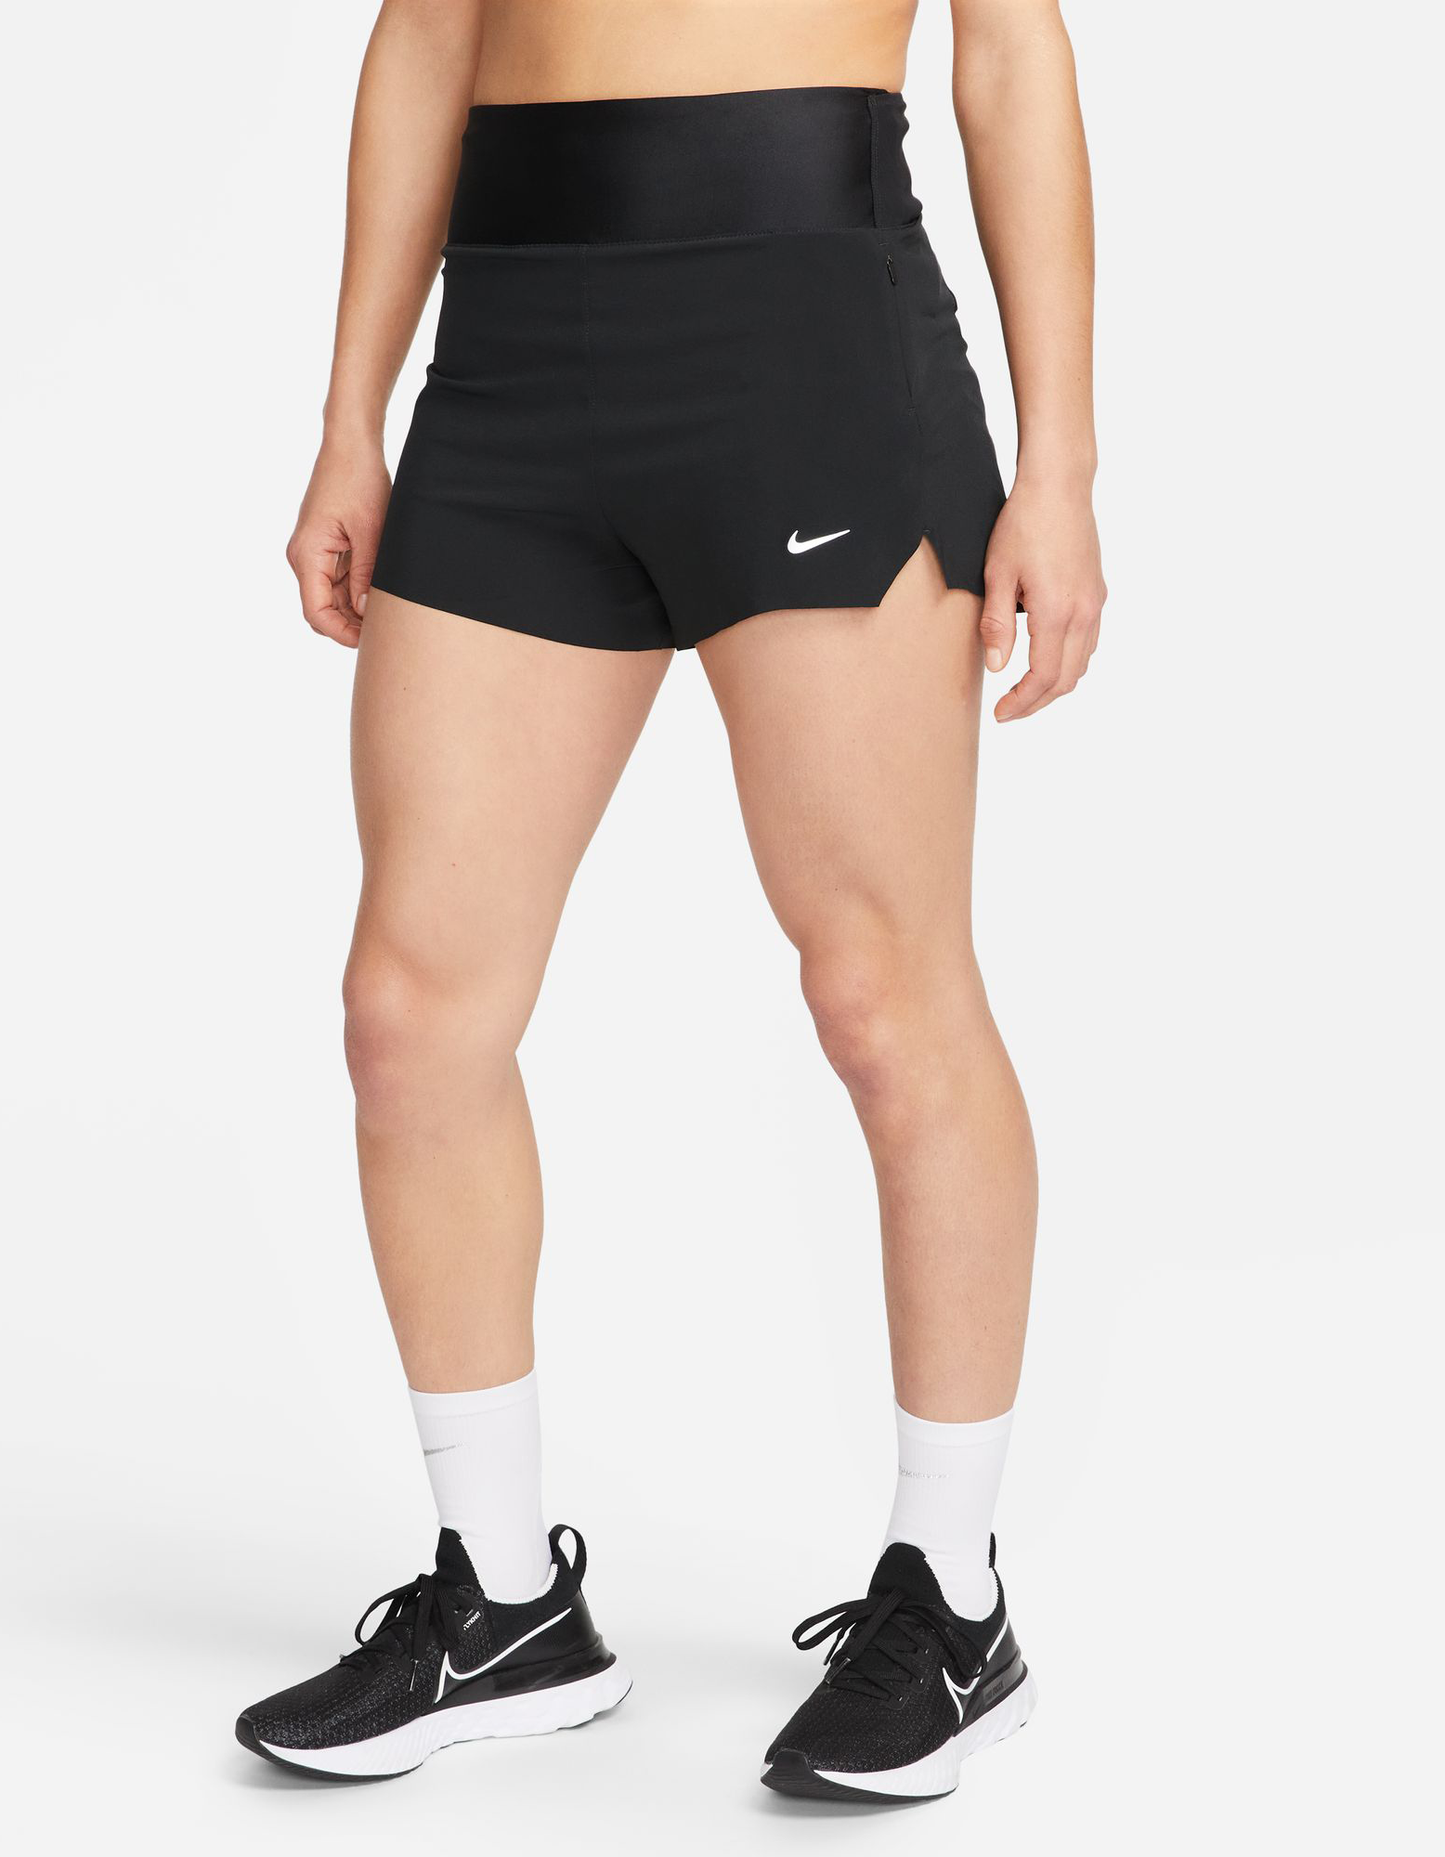 Dri-Fit Swift Shorts - Women's